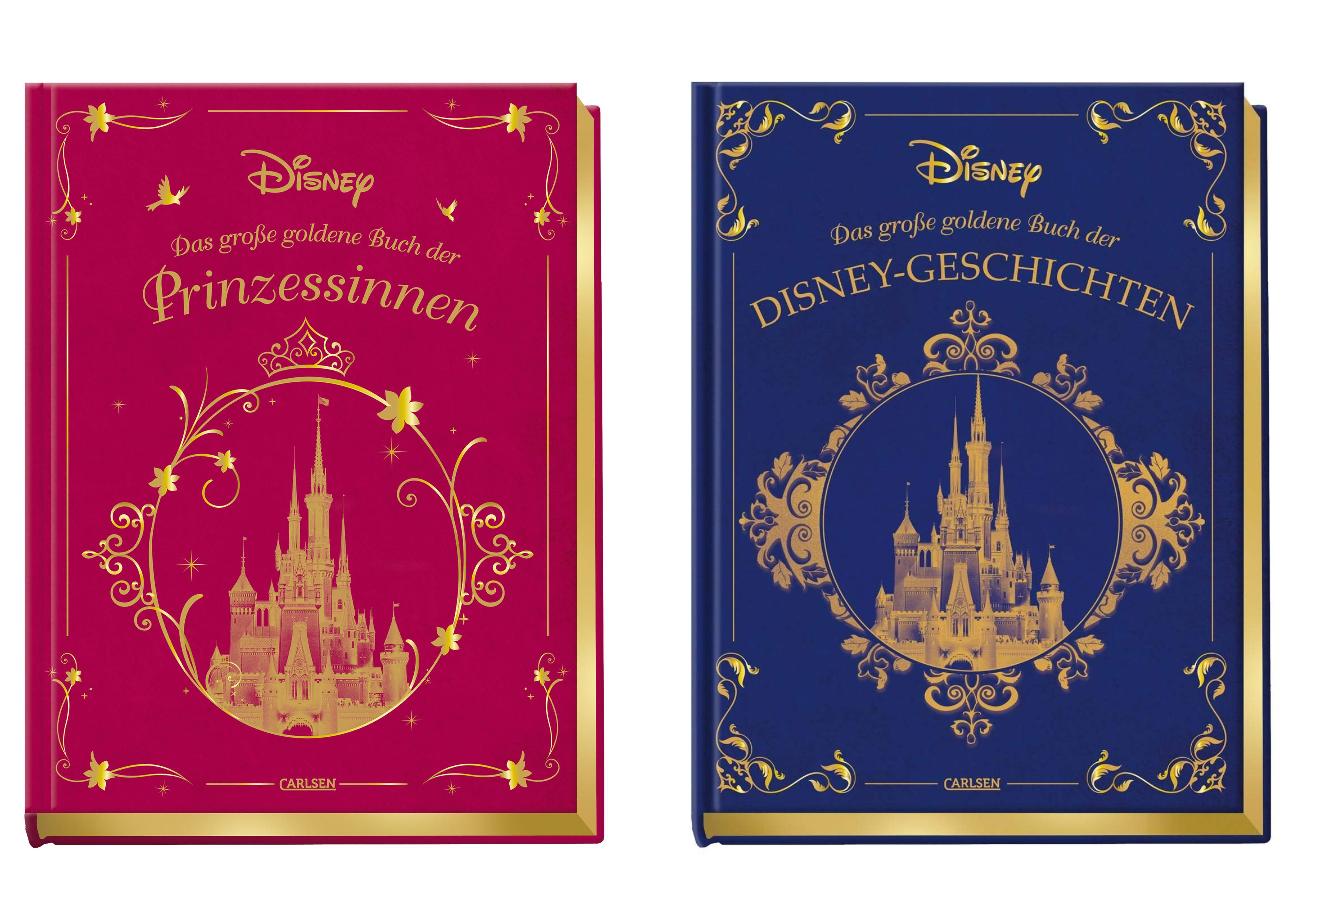 2 wunderschöne Disney-Schmuckausgaben im Set + 1 exklusives Postkartenset